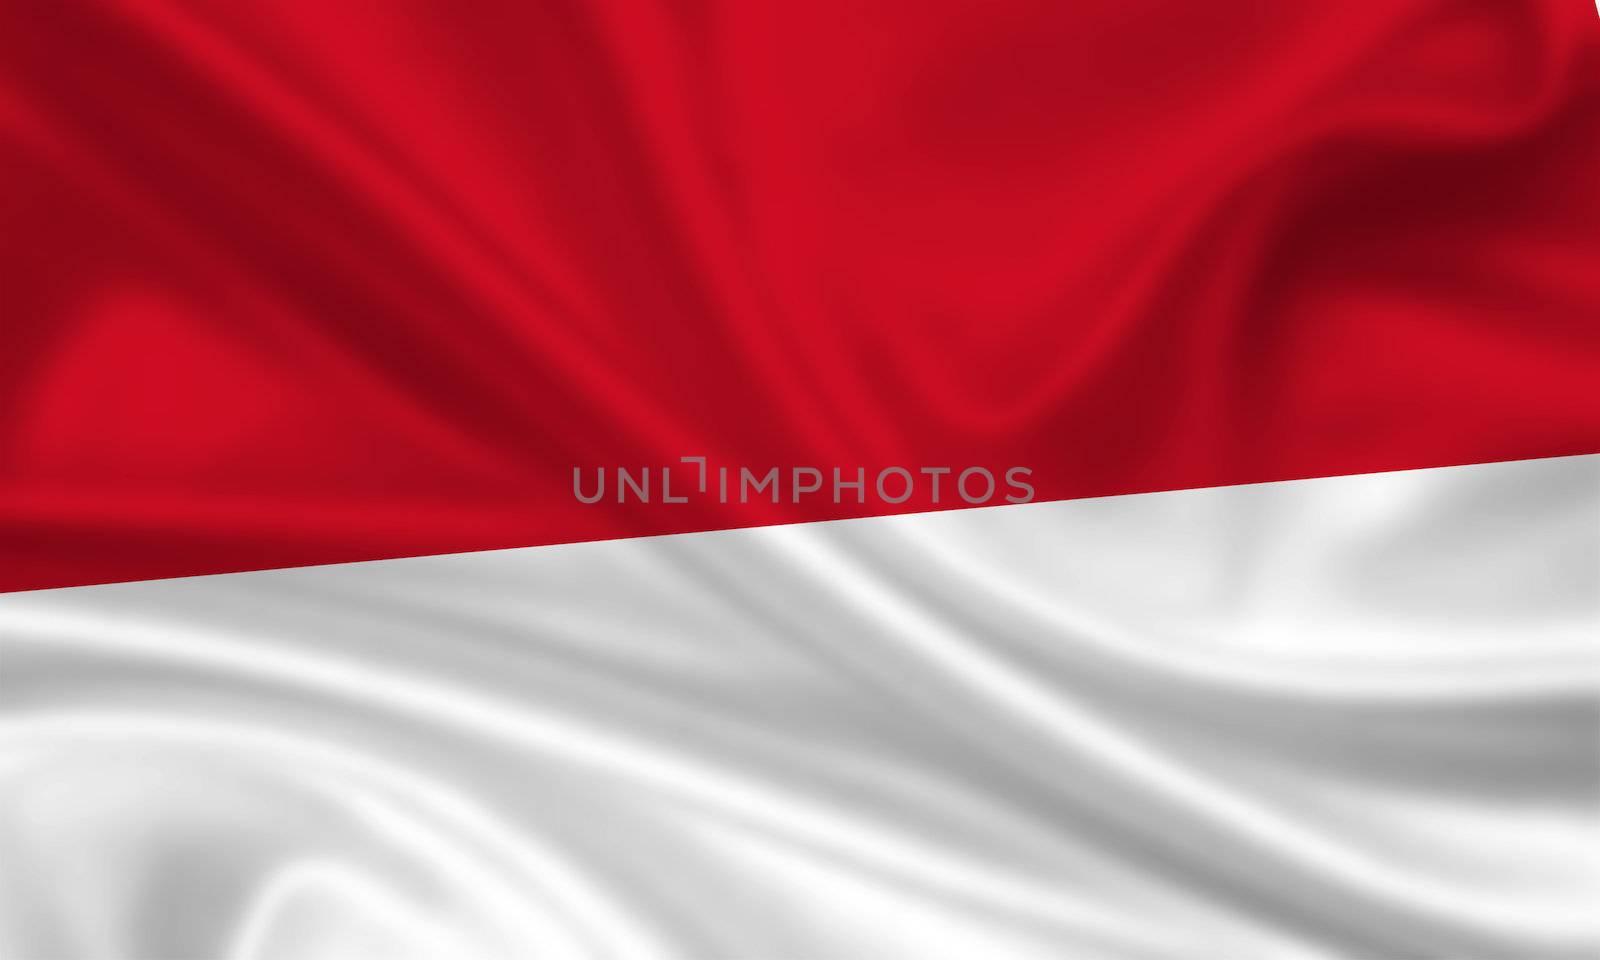 Indonesia / Monaco by aldorado